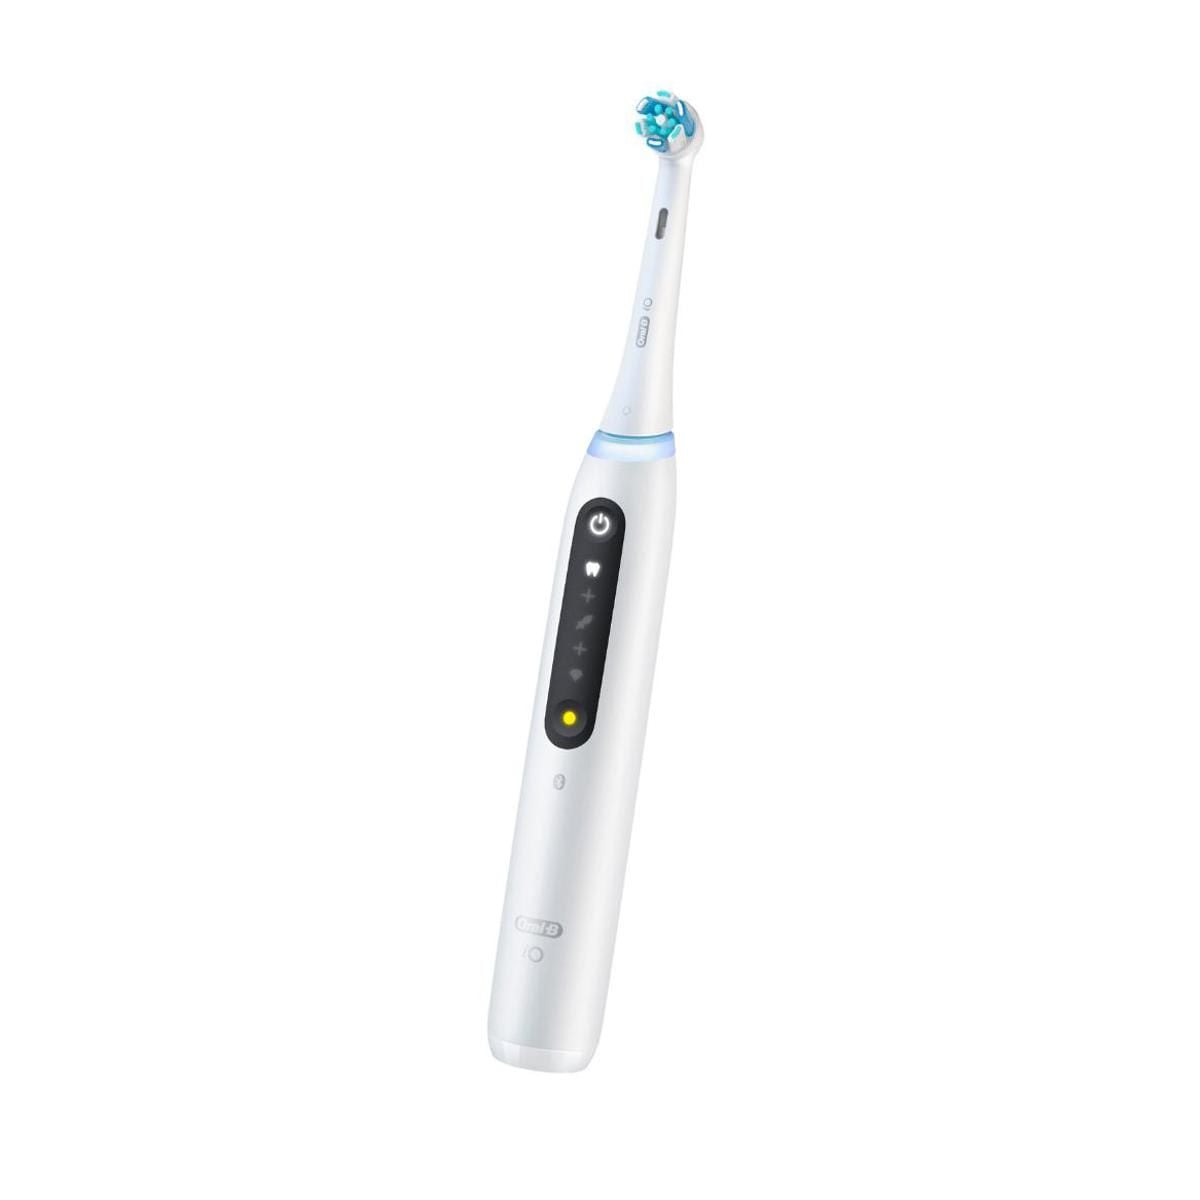 Oral B toothbrush